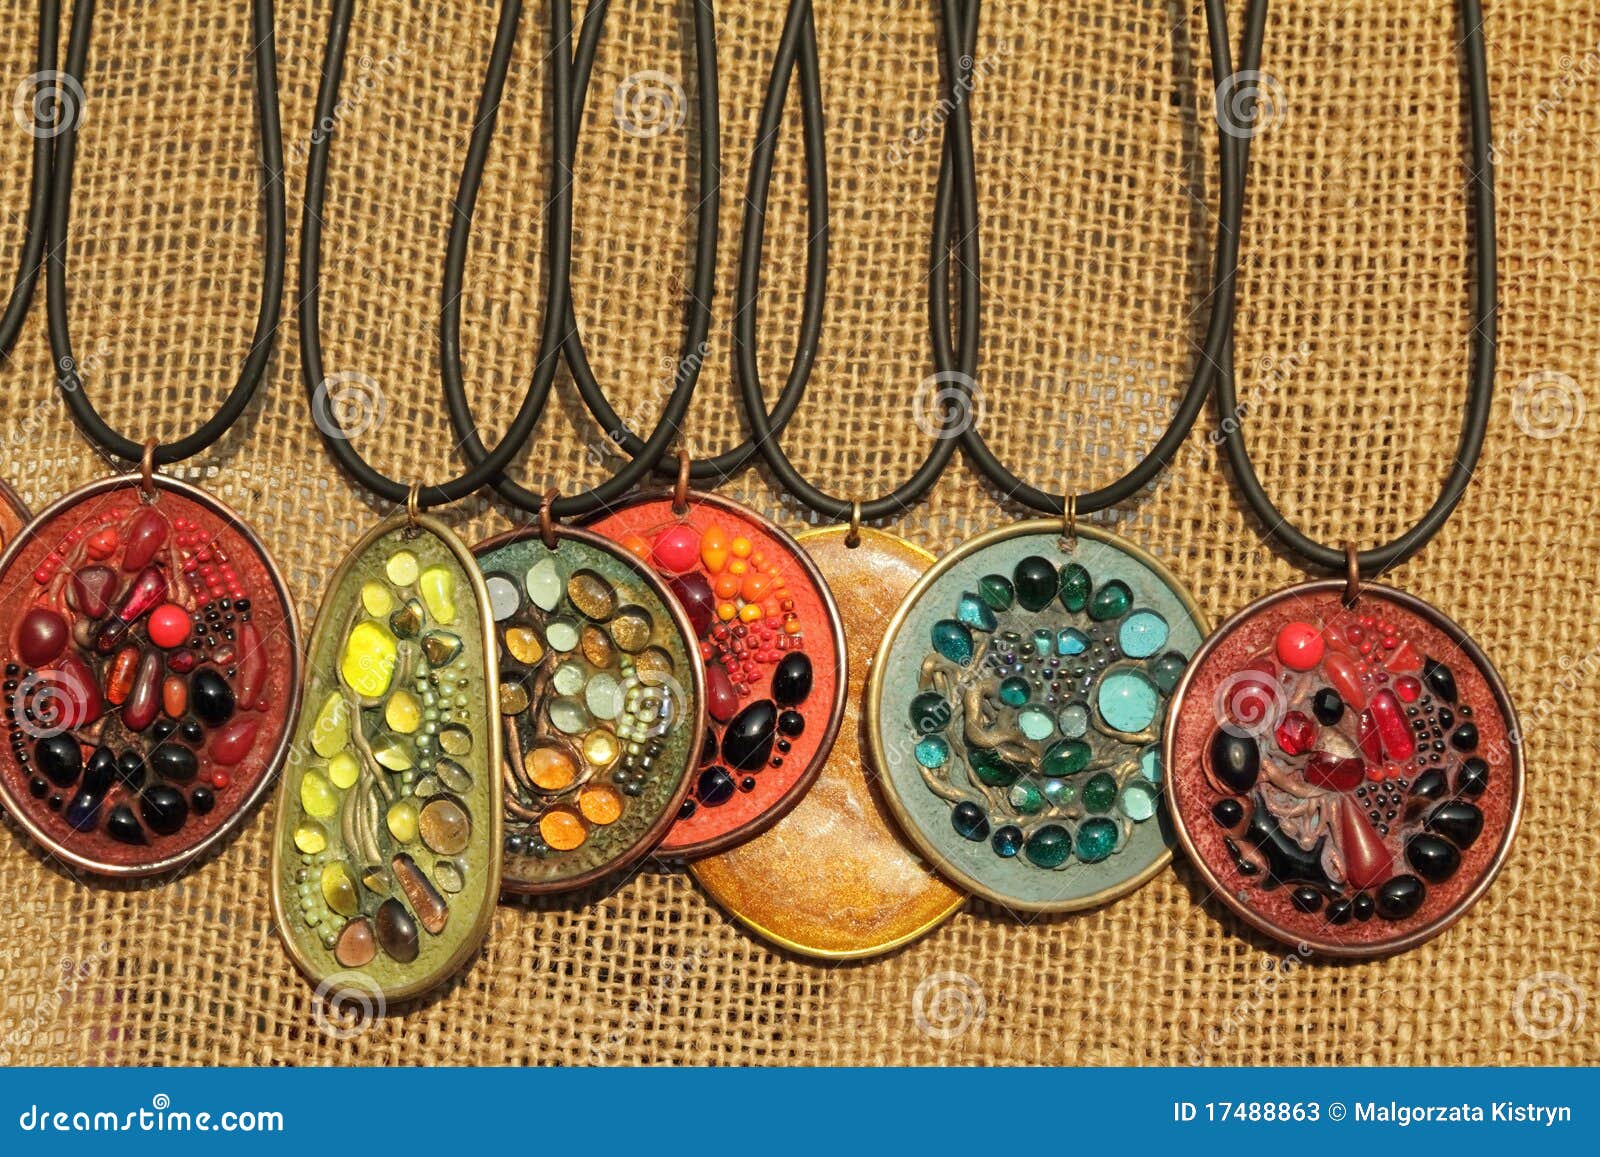 pendants with semiprecious stones